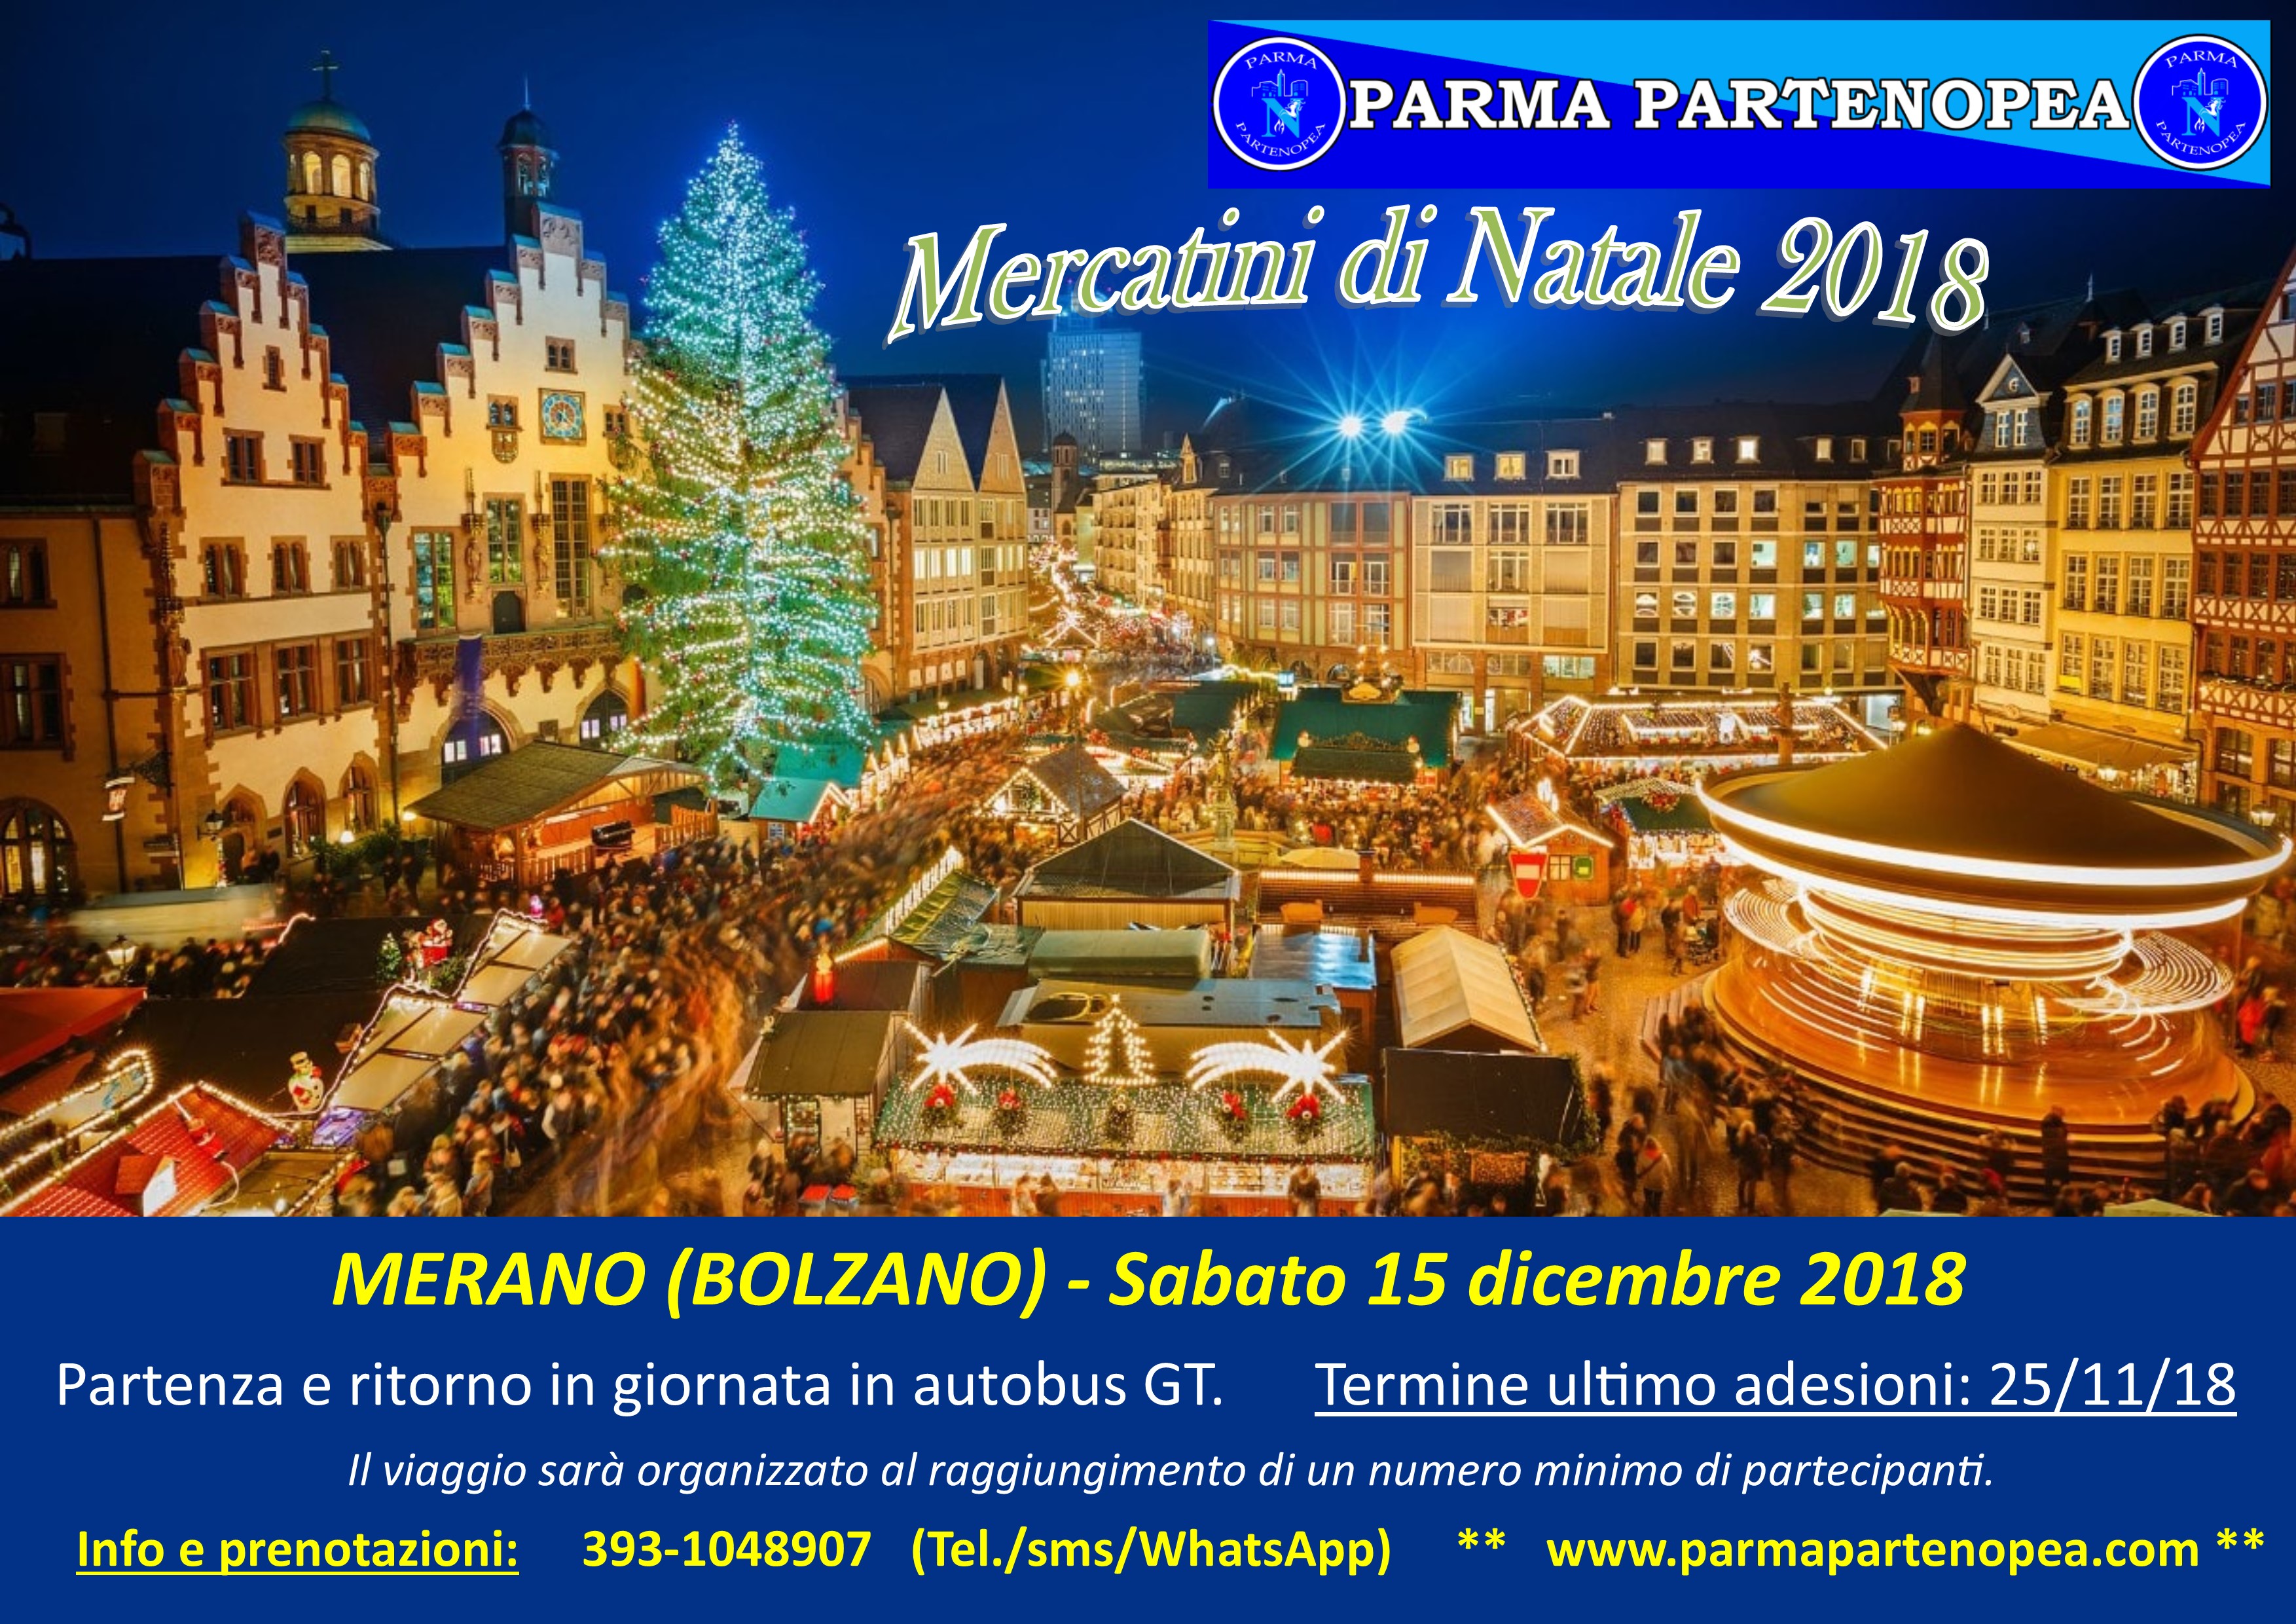 Foto Mercatini Di Natale Merano.Mercatini Di Natale 2018 A Merano Bolzano Con Parma Partenopea Sabato 15 Dicembre 2018 Parma Partenopea